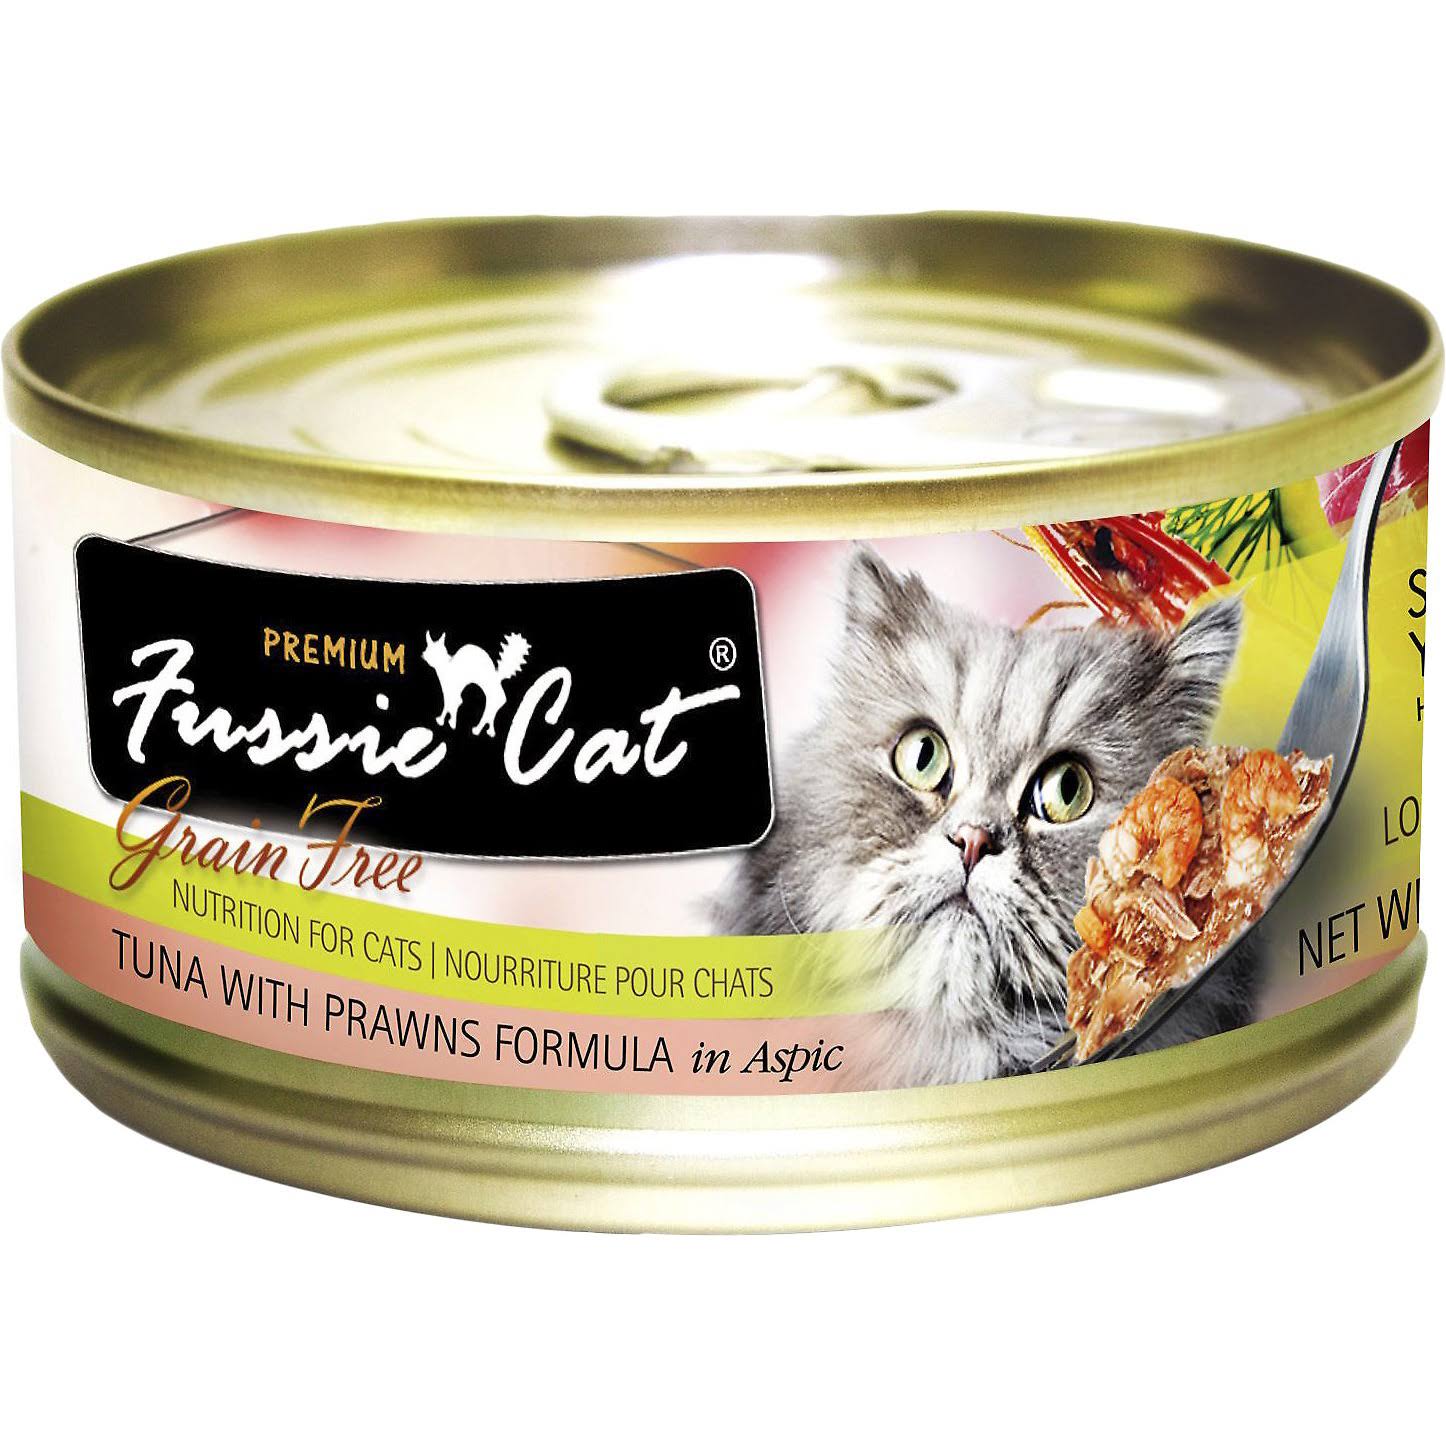 Fussie Cat Premium Cat Food - Tuna with Salmon